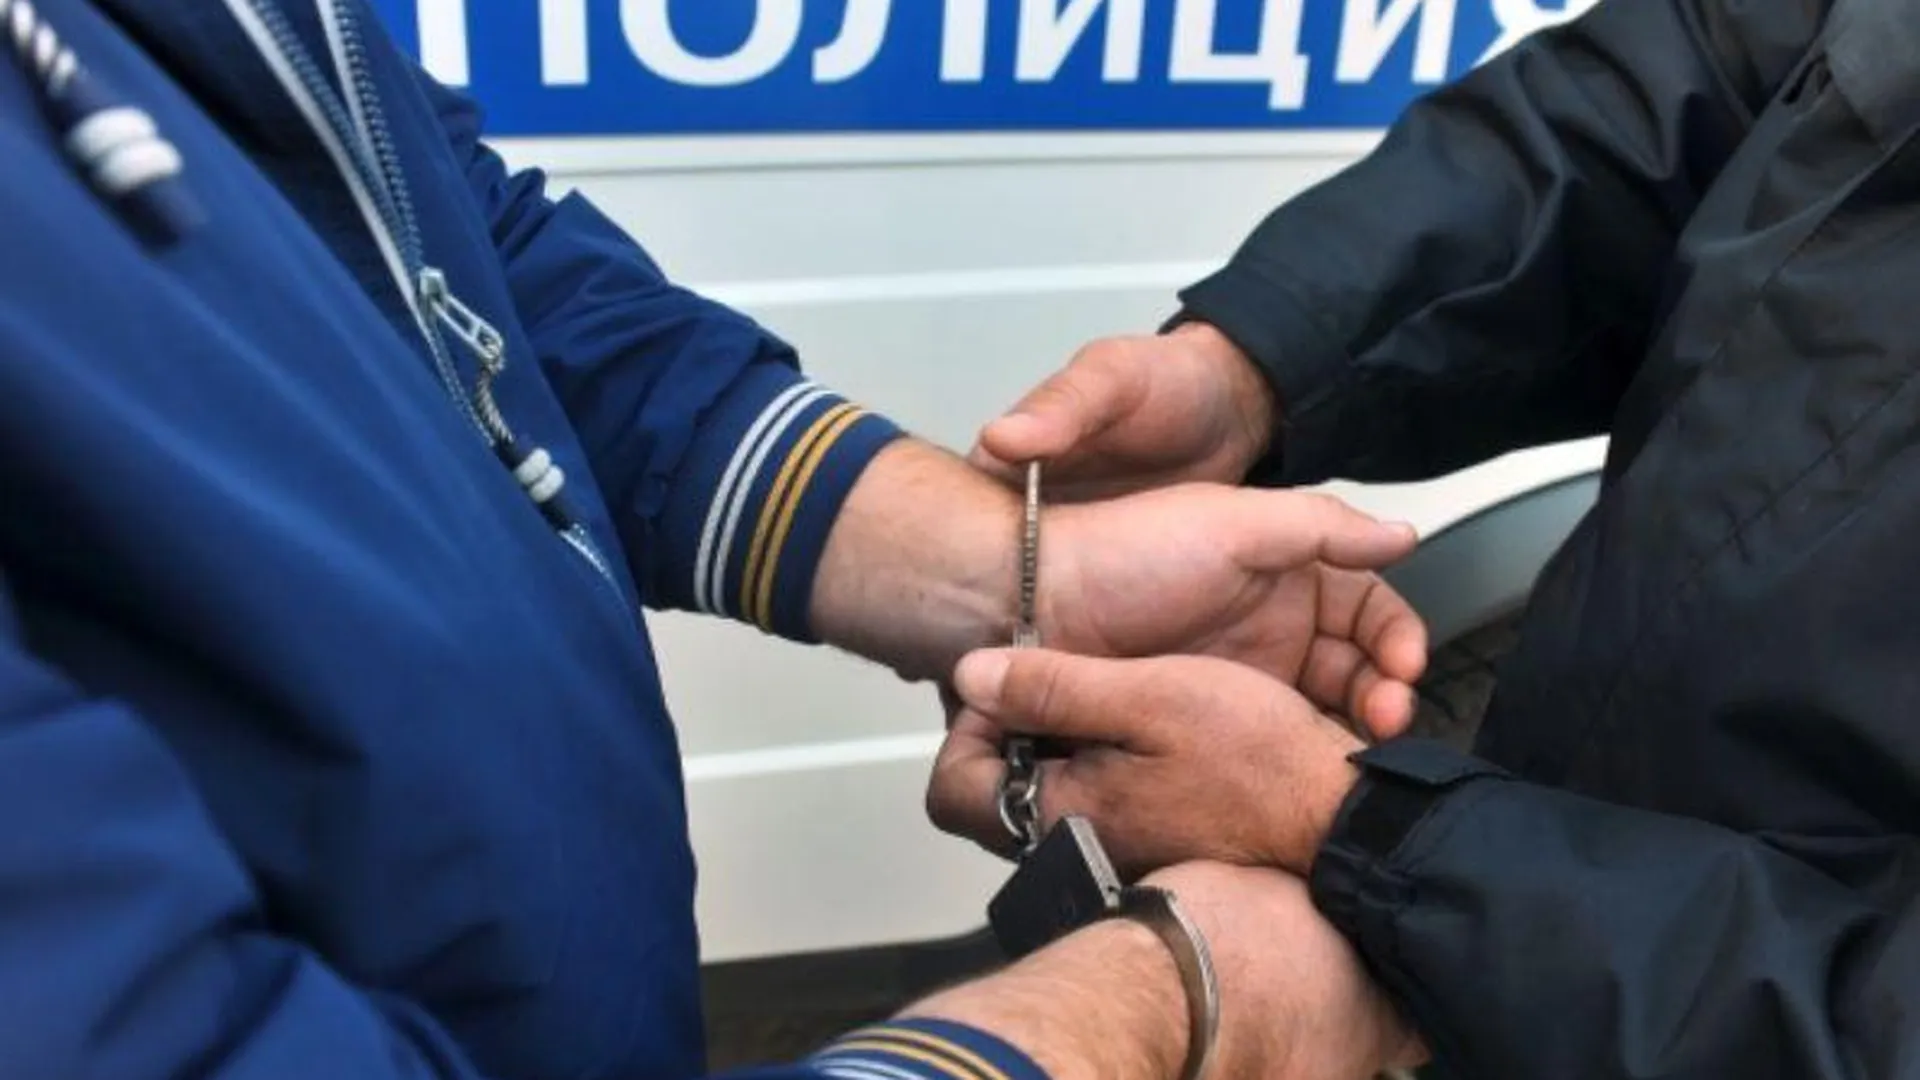 Порядка трех килограммов наркотических средств изъяли у мужчины в Подмосковье